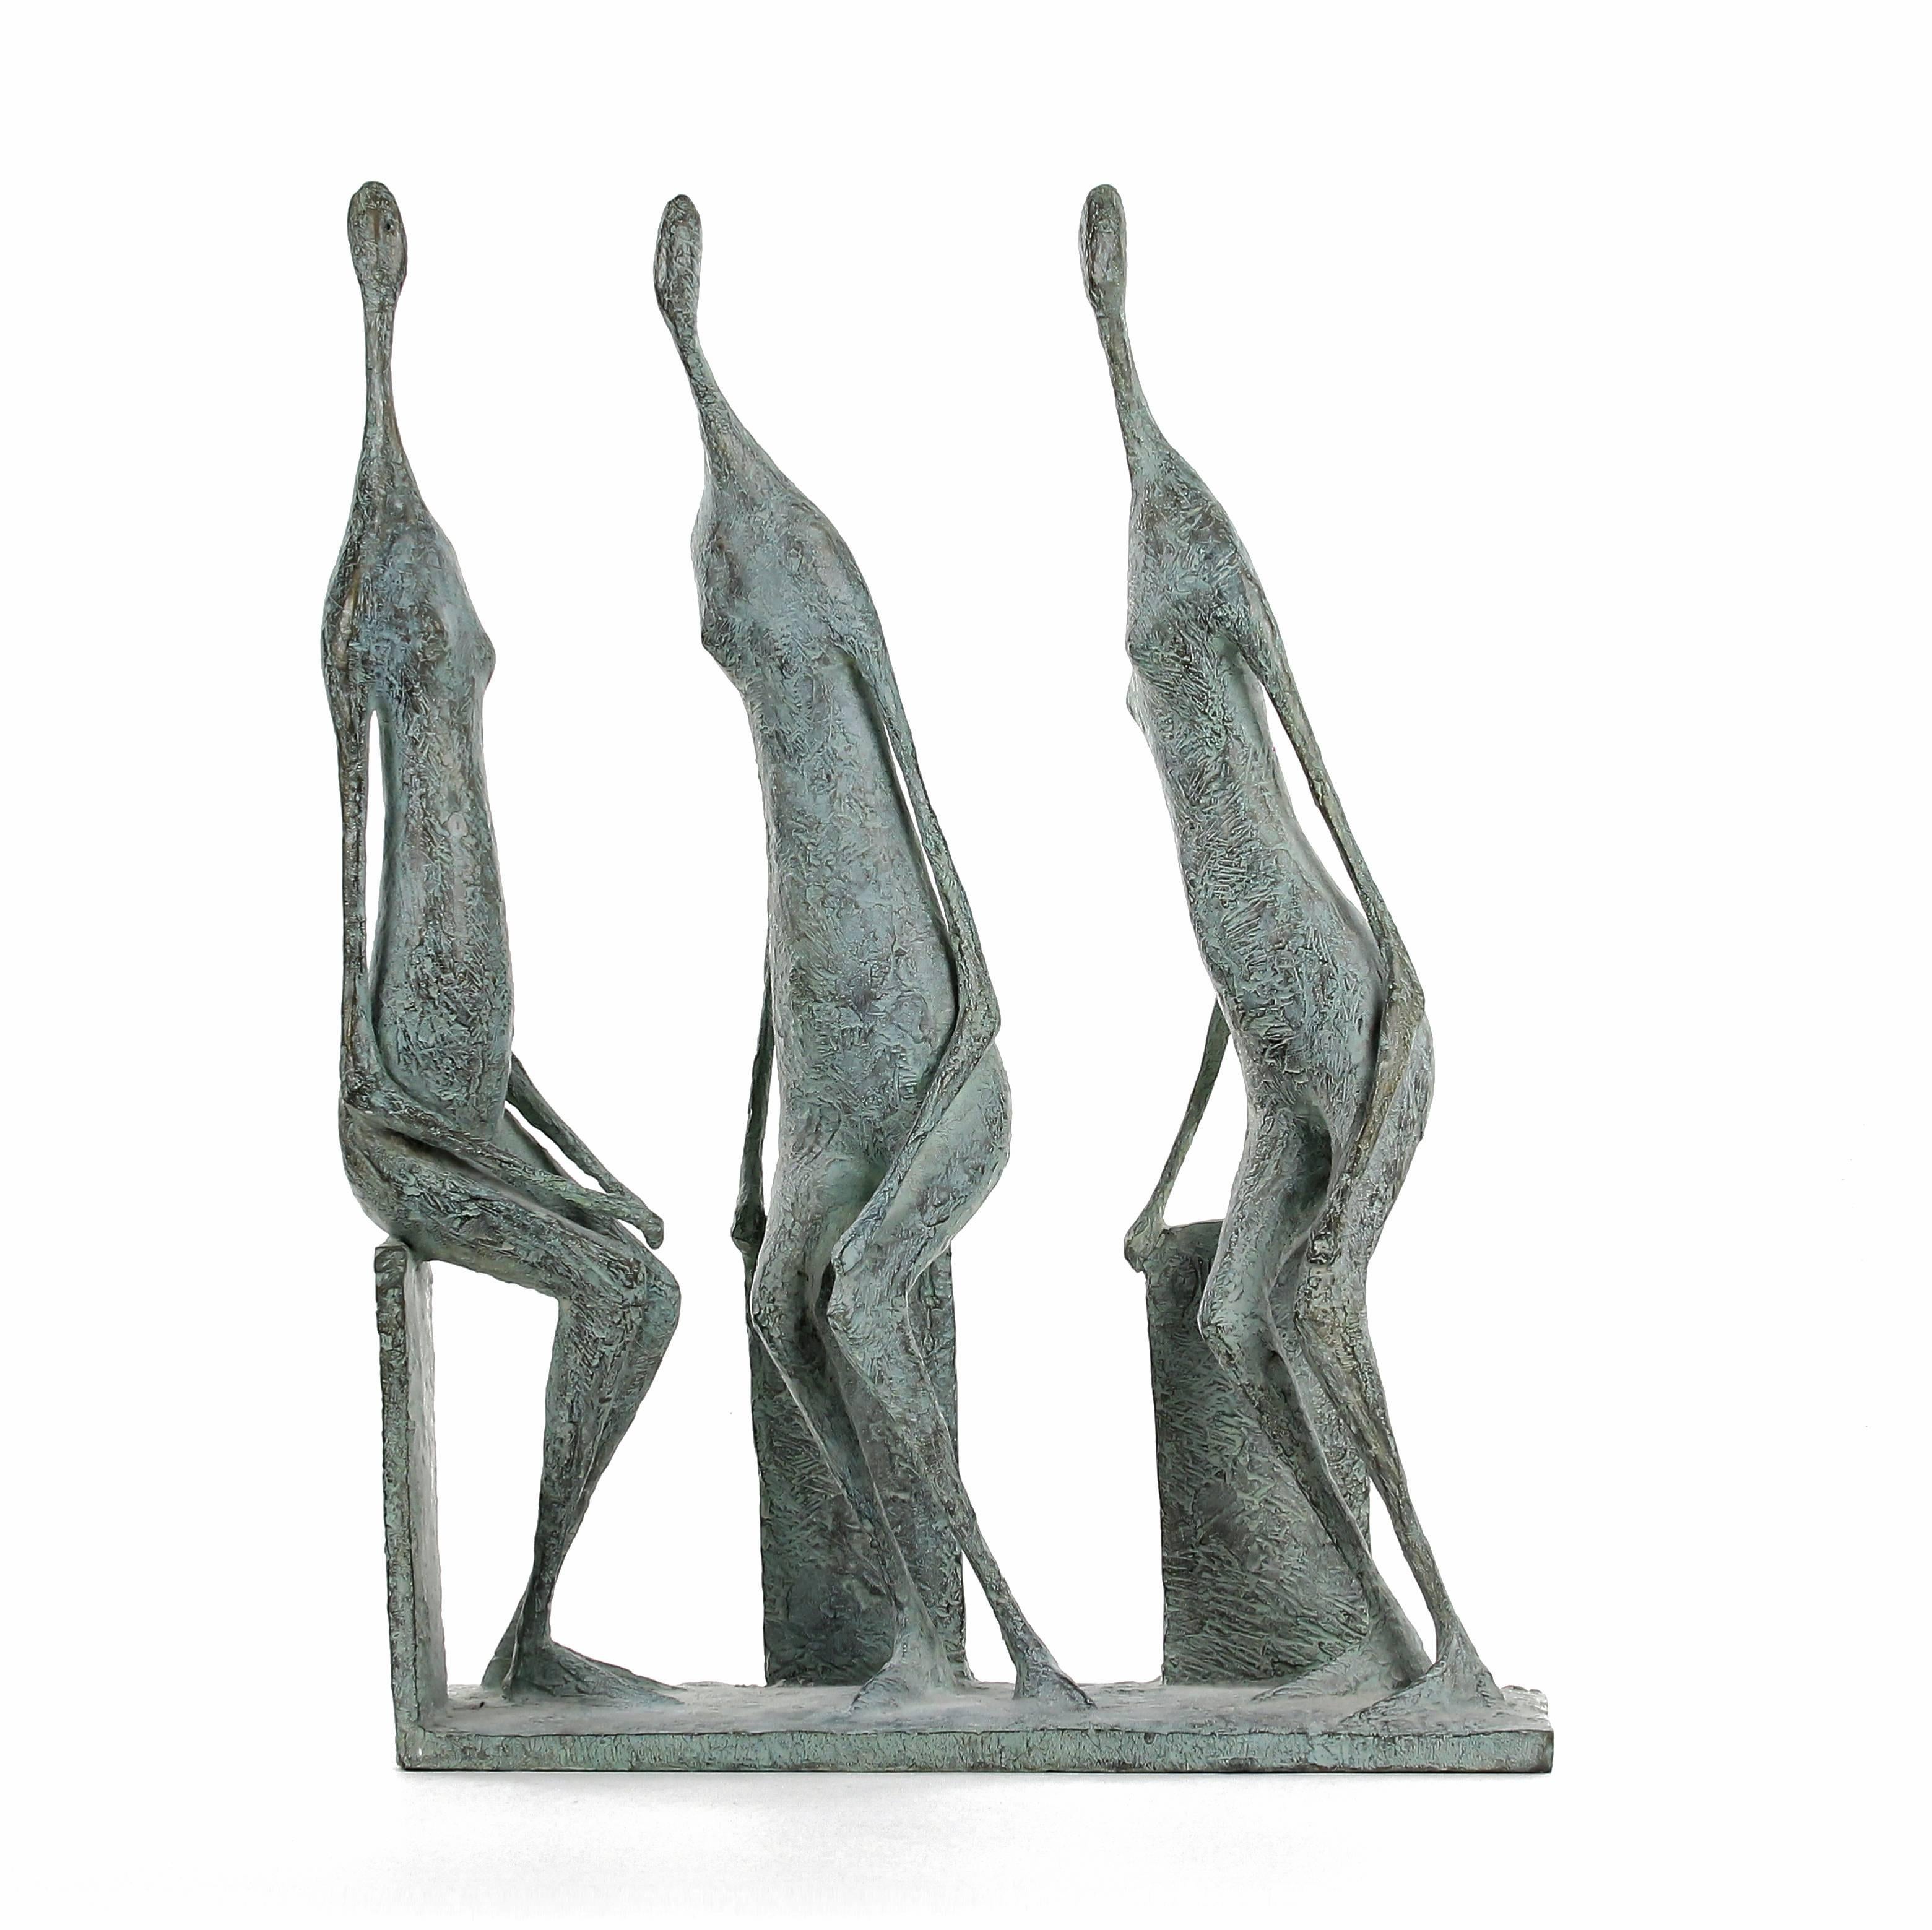 3 Seated Figures II est une sculpture en bronze de l'artiste français Pierre Yermia. "Organisées en groupes de 3, ces figures créent un nouveau jeu entre le positif et le négatif, et ouvrent un tout nouveau domaine pour le spectateur. La proximité